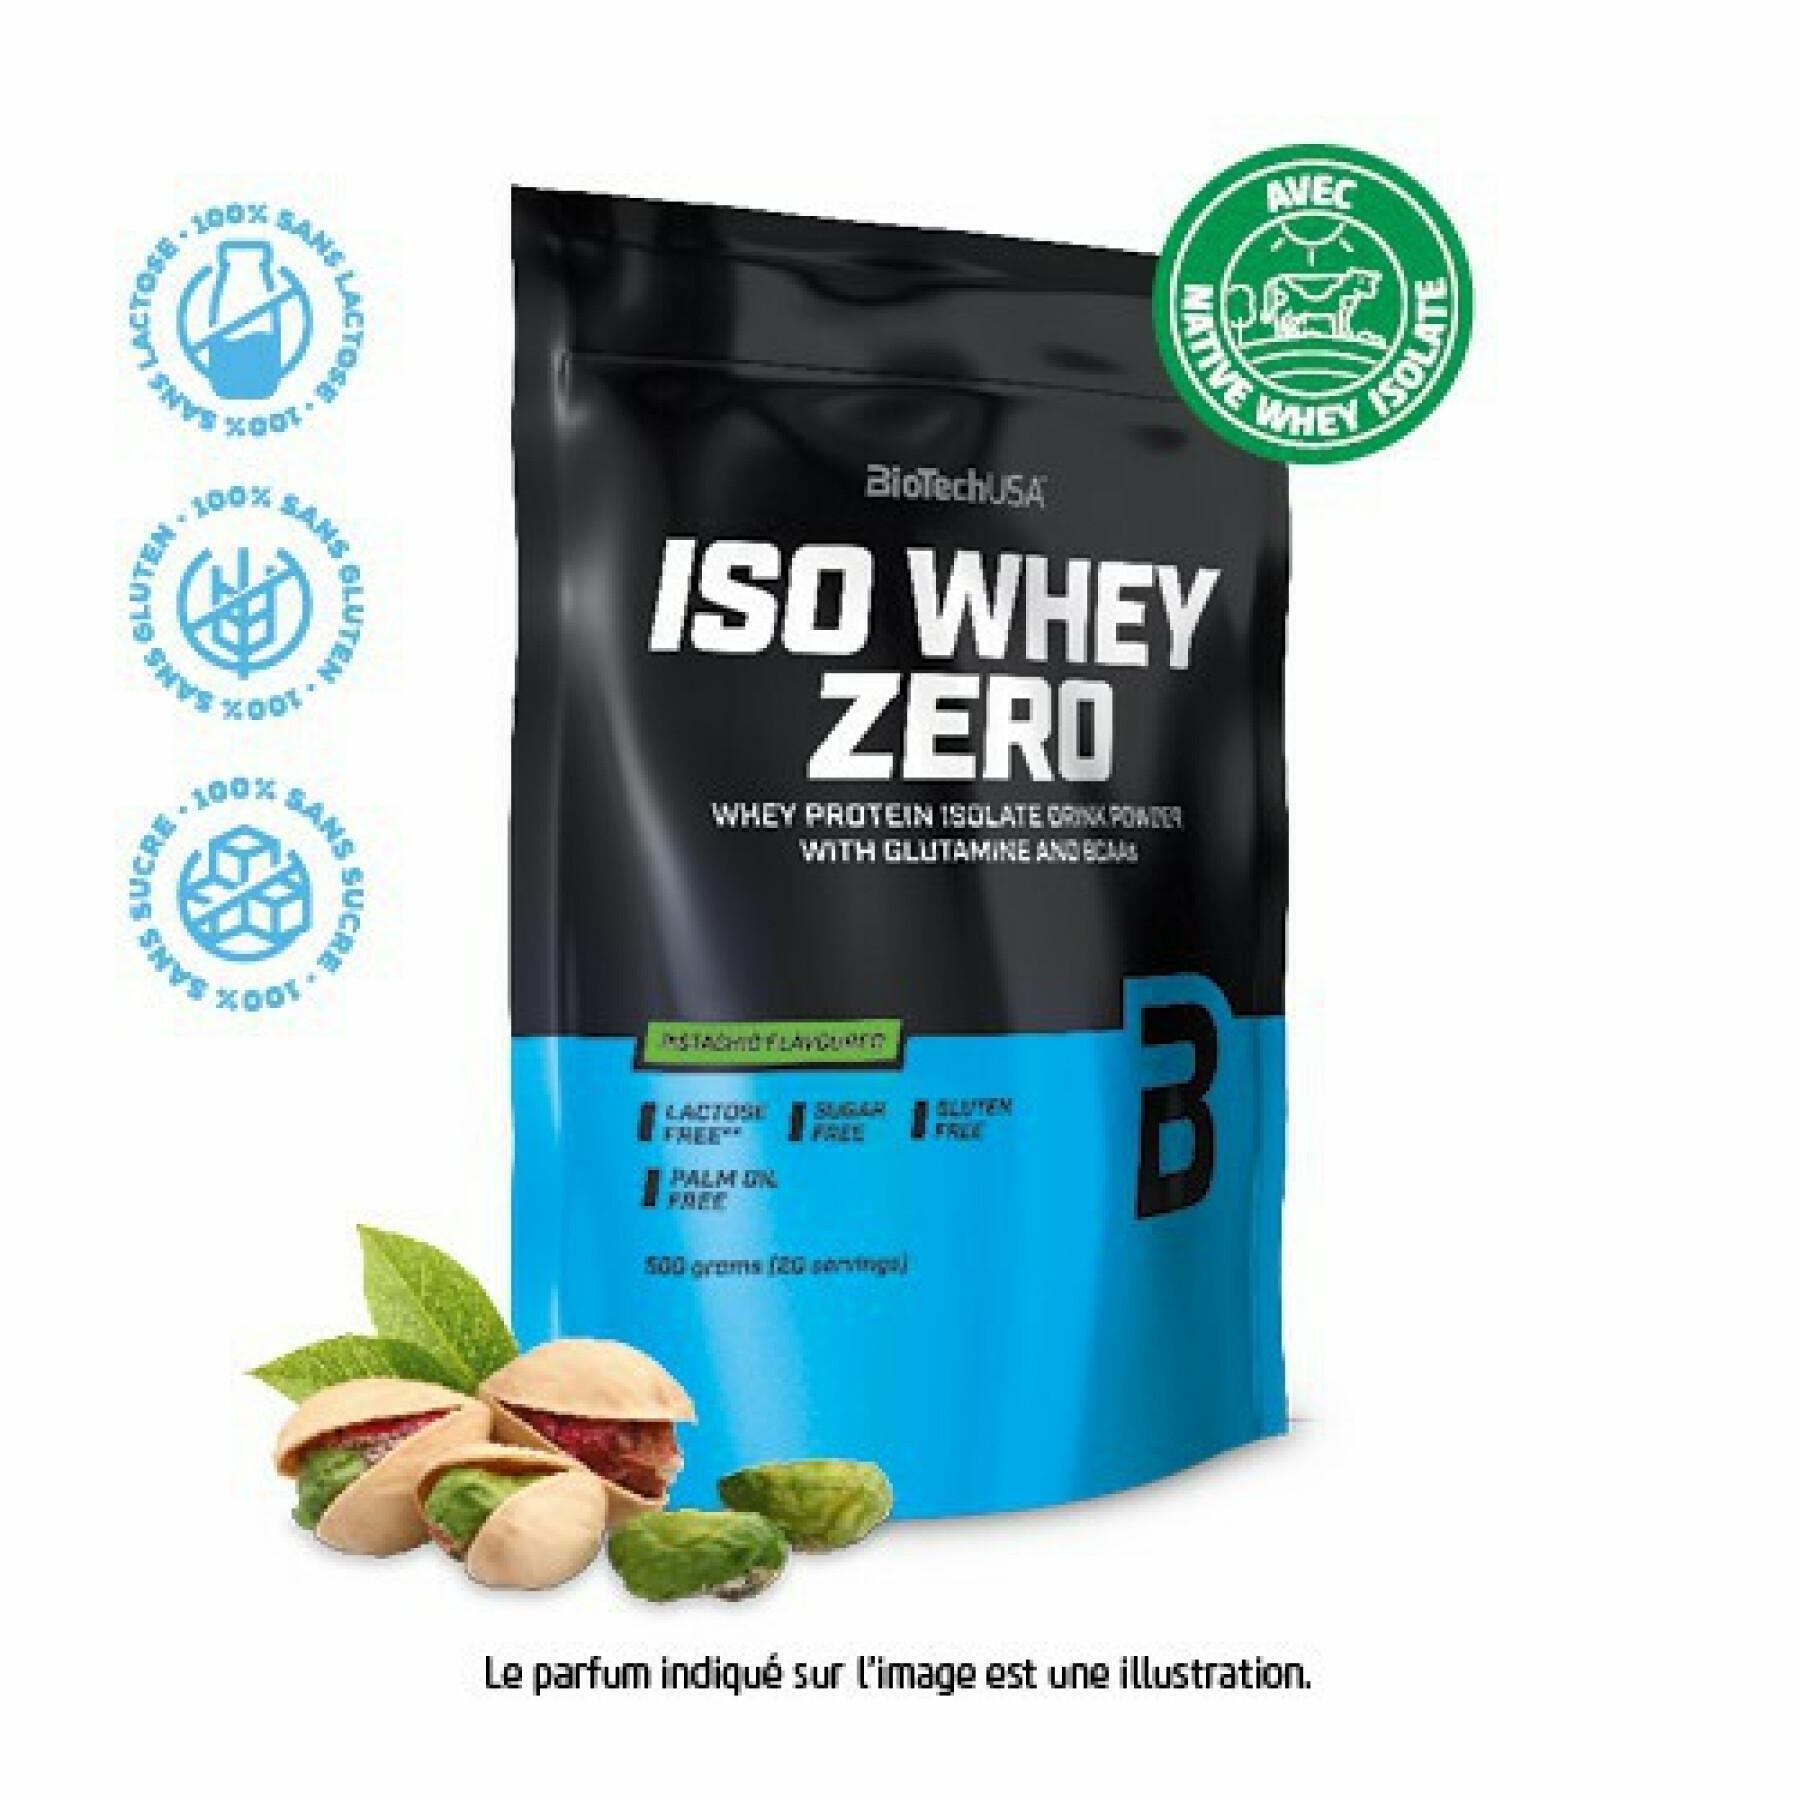 Pak van 10 zakjes proteïne Biotech USA iso whey zero lactose free - Pistache - 500g